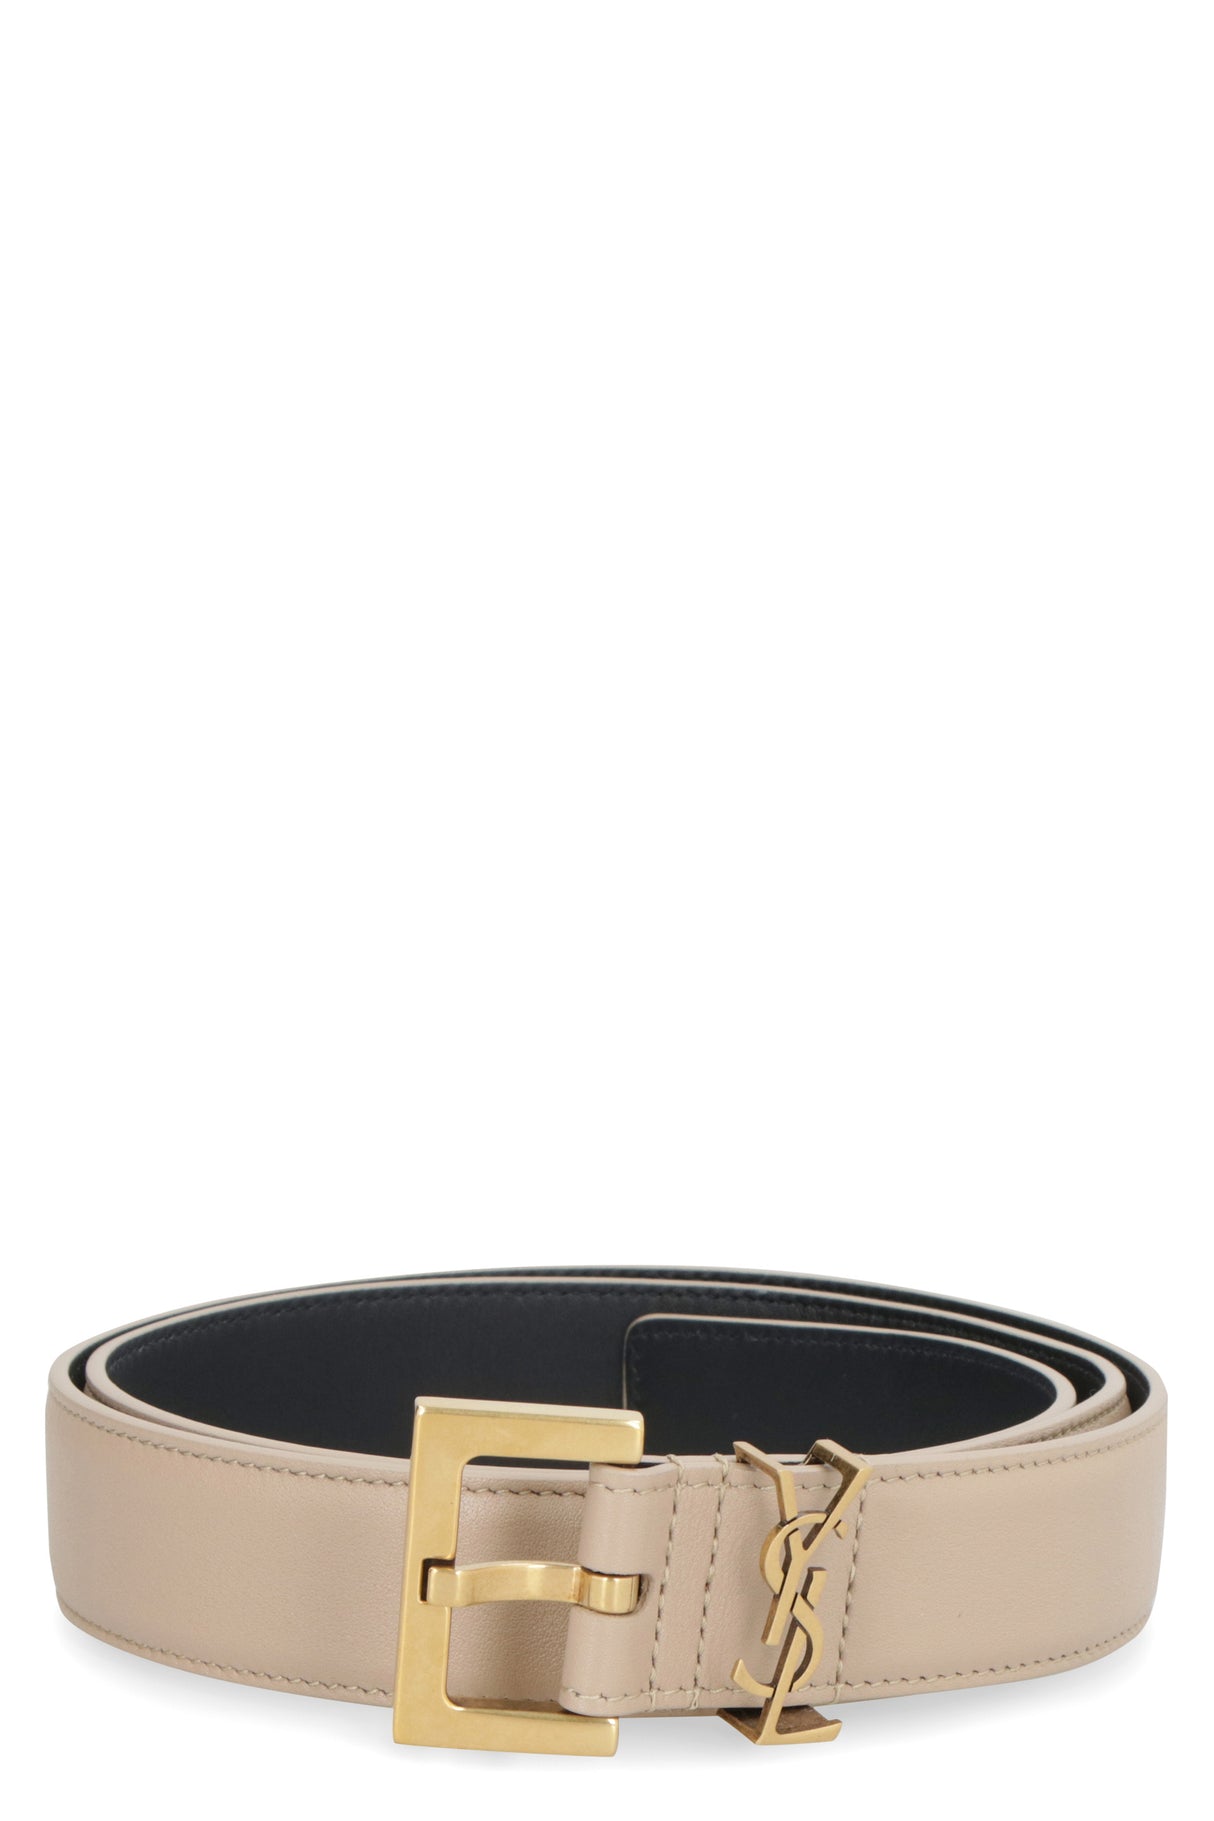 SAINT LAURENT Elegant and versatile leather belt with signature logo plaque